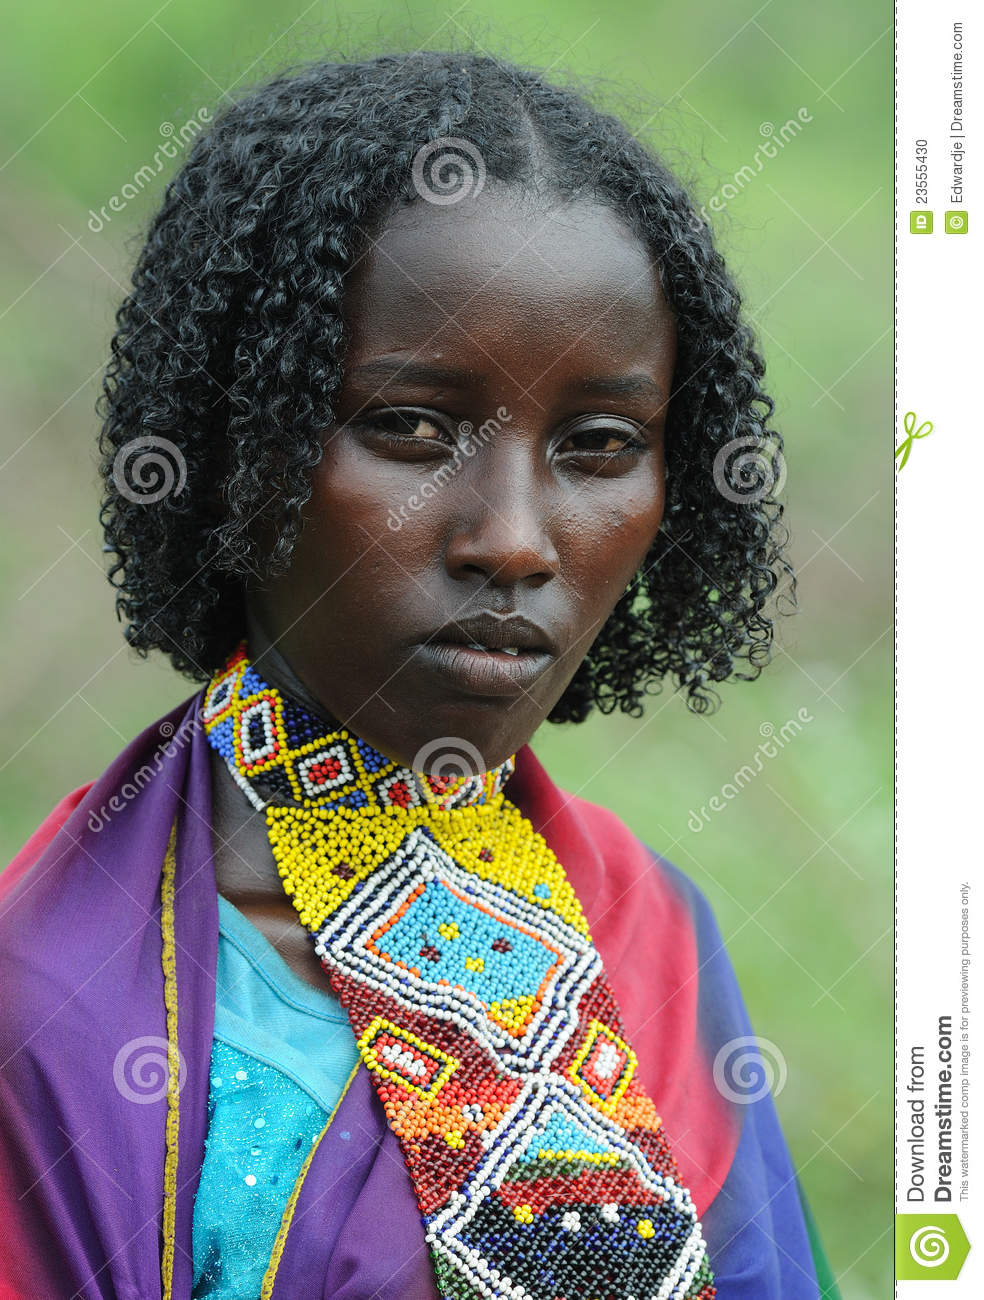 ethiopian-people-23555430.jpg